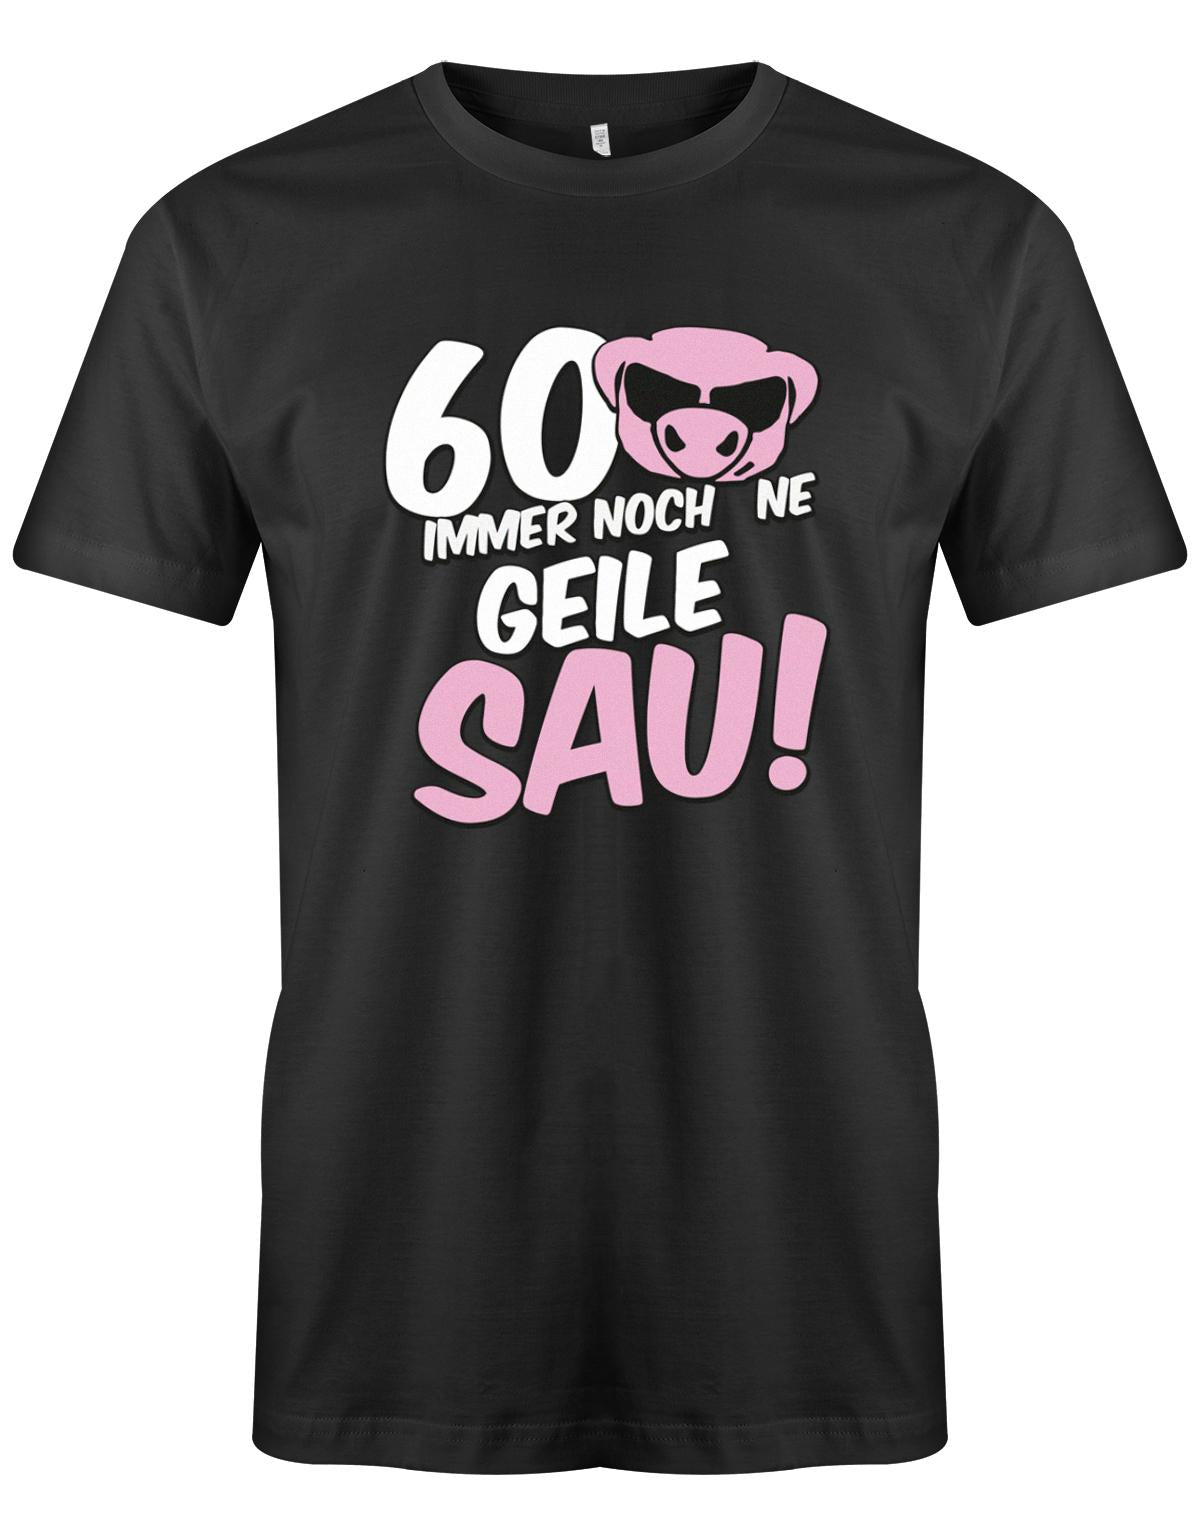 Lustiges T-Shirt zum 60 Geburtstag für den Mann Bedruckt mit 60 Immer noch 'ne geile Sau! Sau mit Sonnenbrille Schwarz